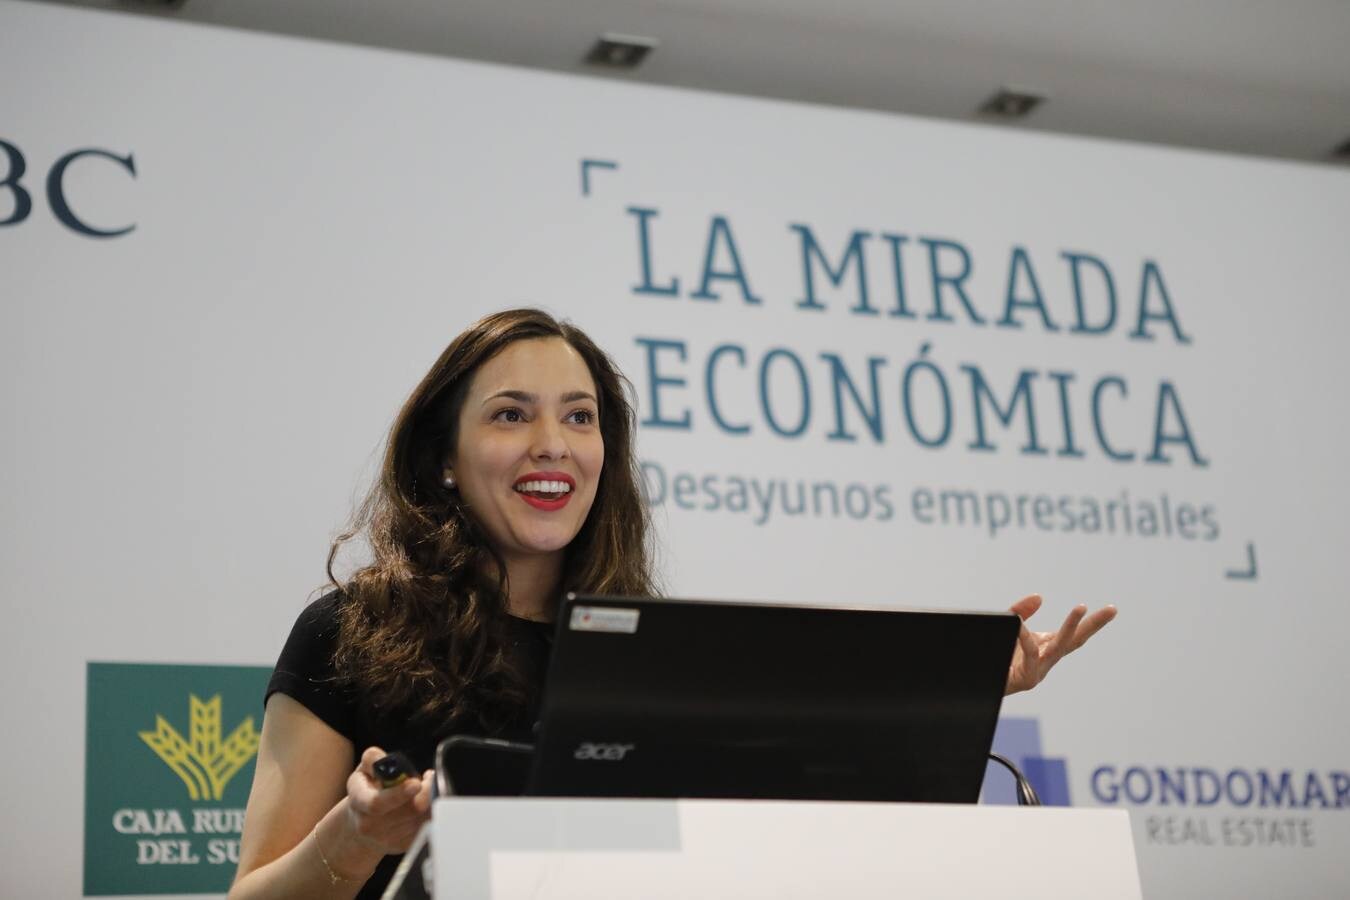 En imágenes, la Mirada Económica de ABC Córdoba